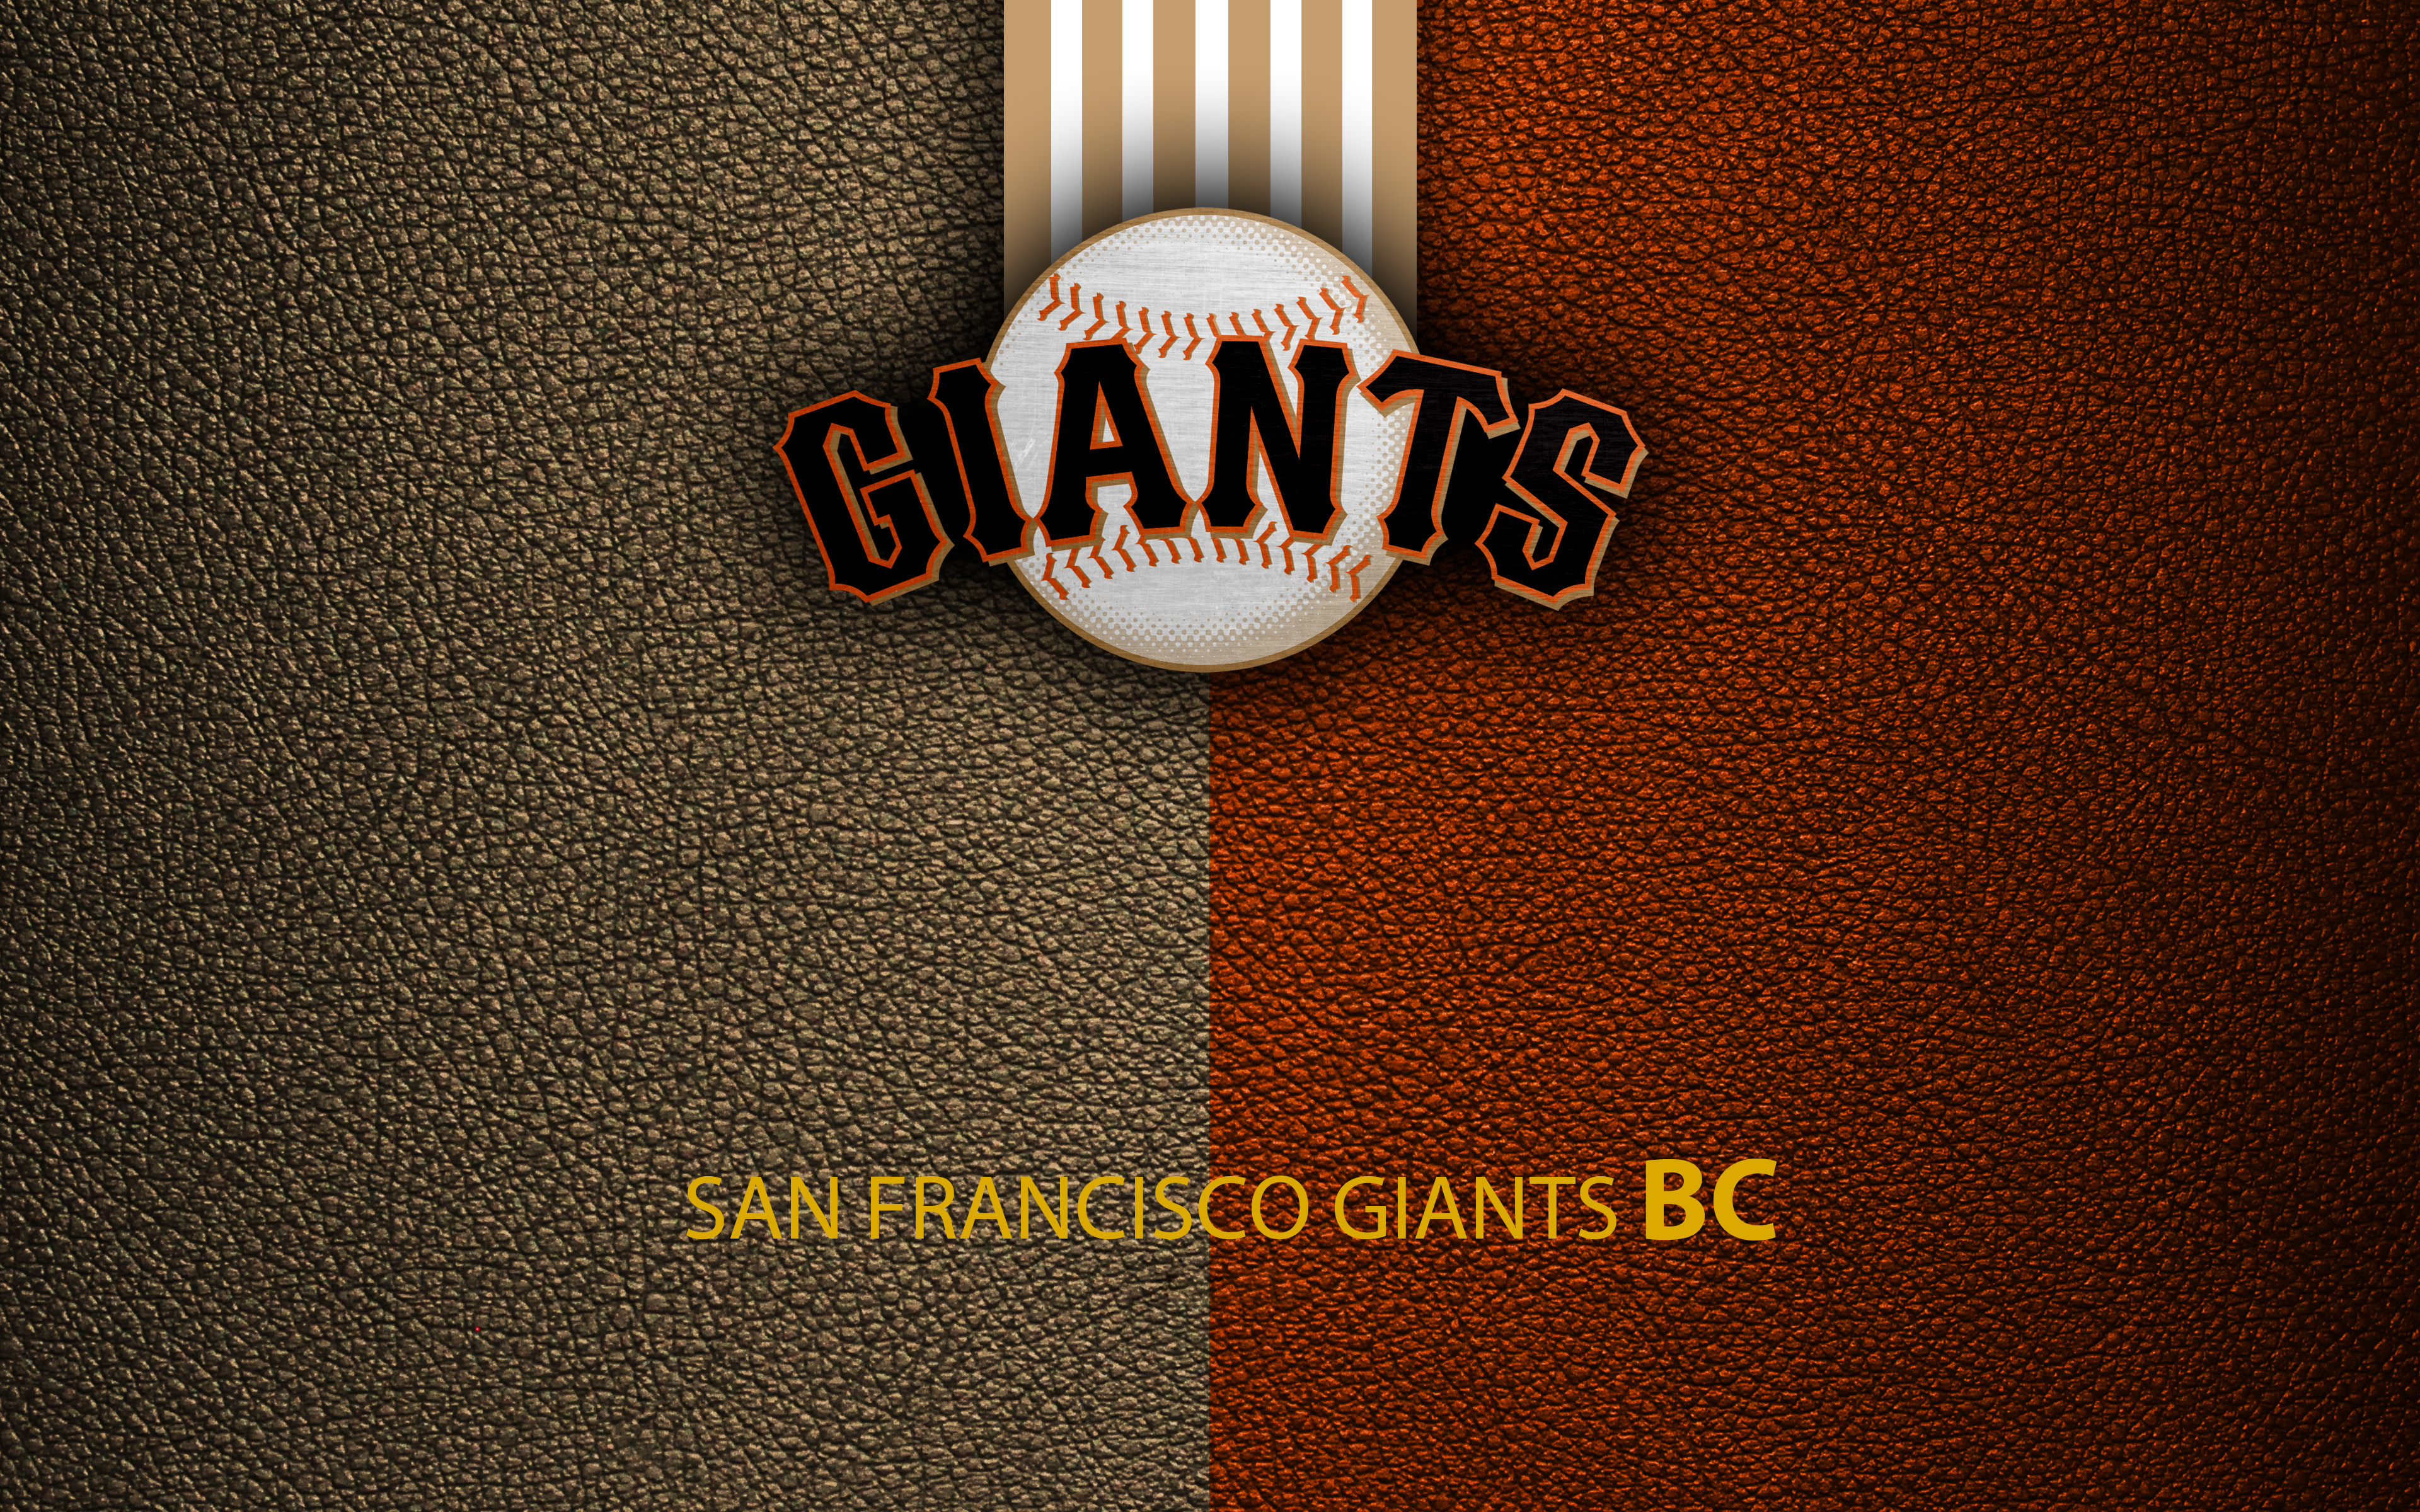 San Francisco Giants 1080P, 2K, 4K, 5K HD wallpapers free download